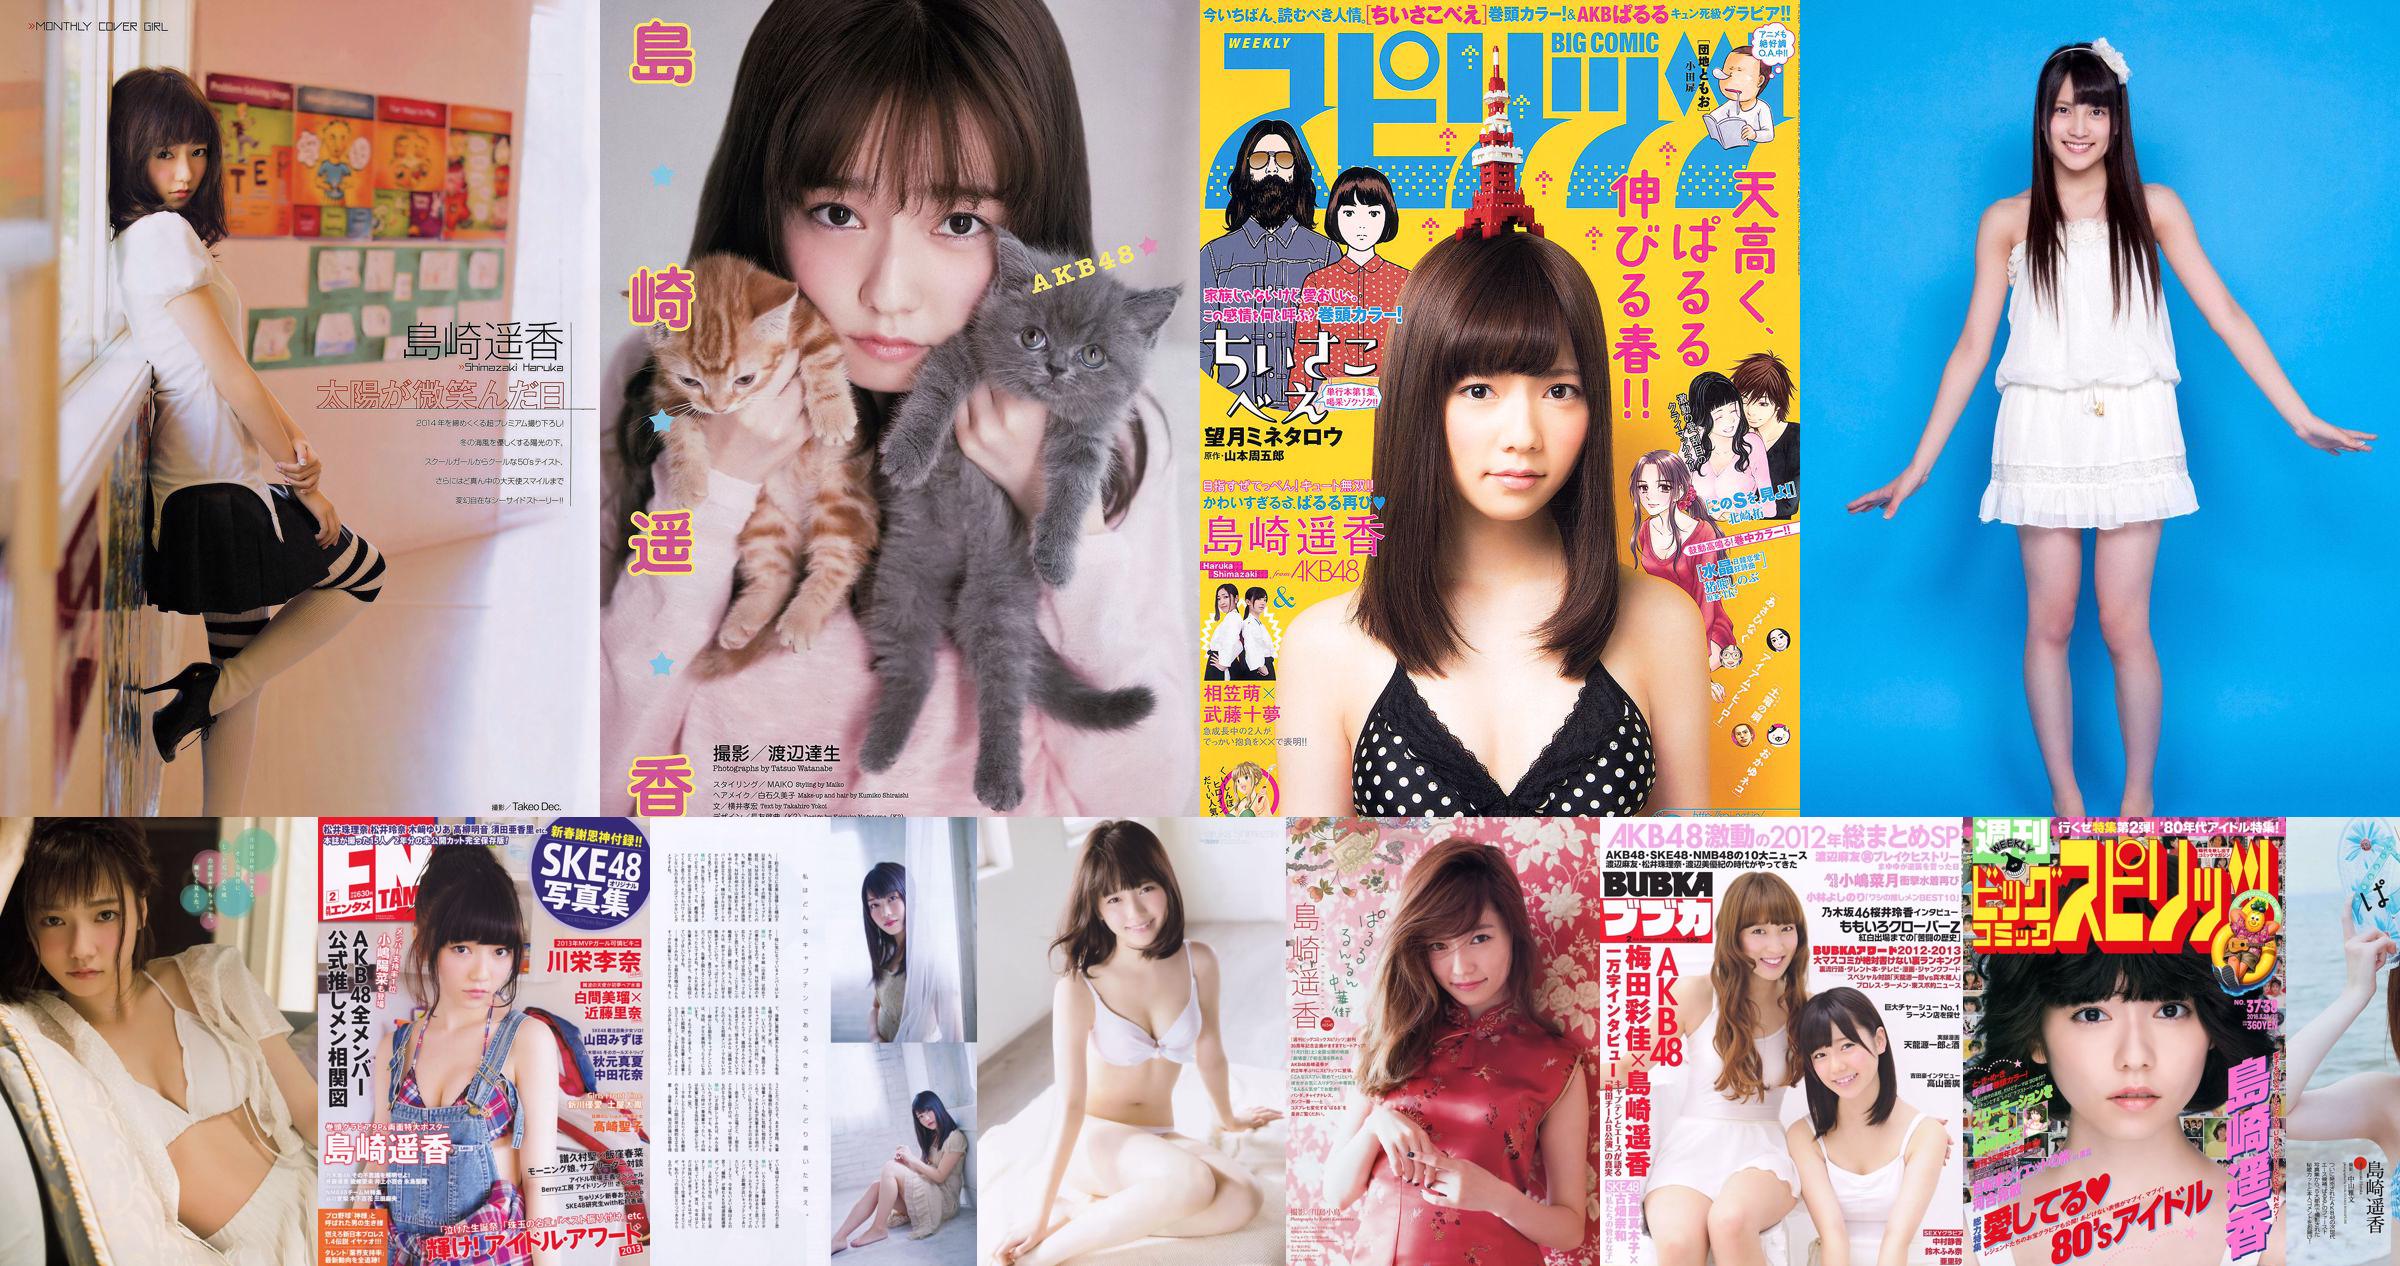 Shimazaki Haruka, Kawamoto Saya, Sasaki Yukari [Weekly Young Jump] 2015 No. 27 Photo Magazine No.09b639 Page 6